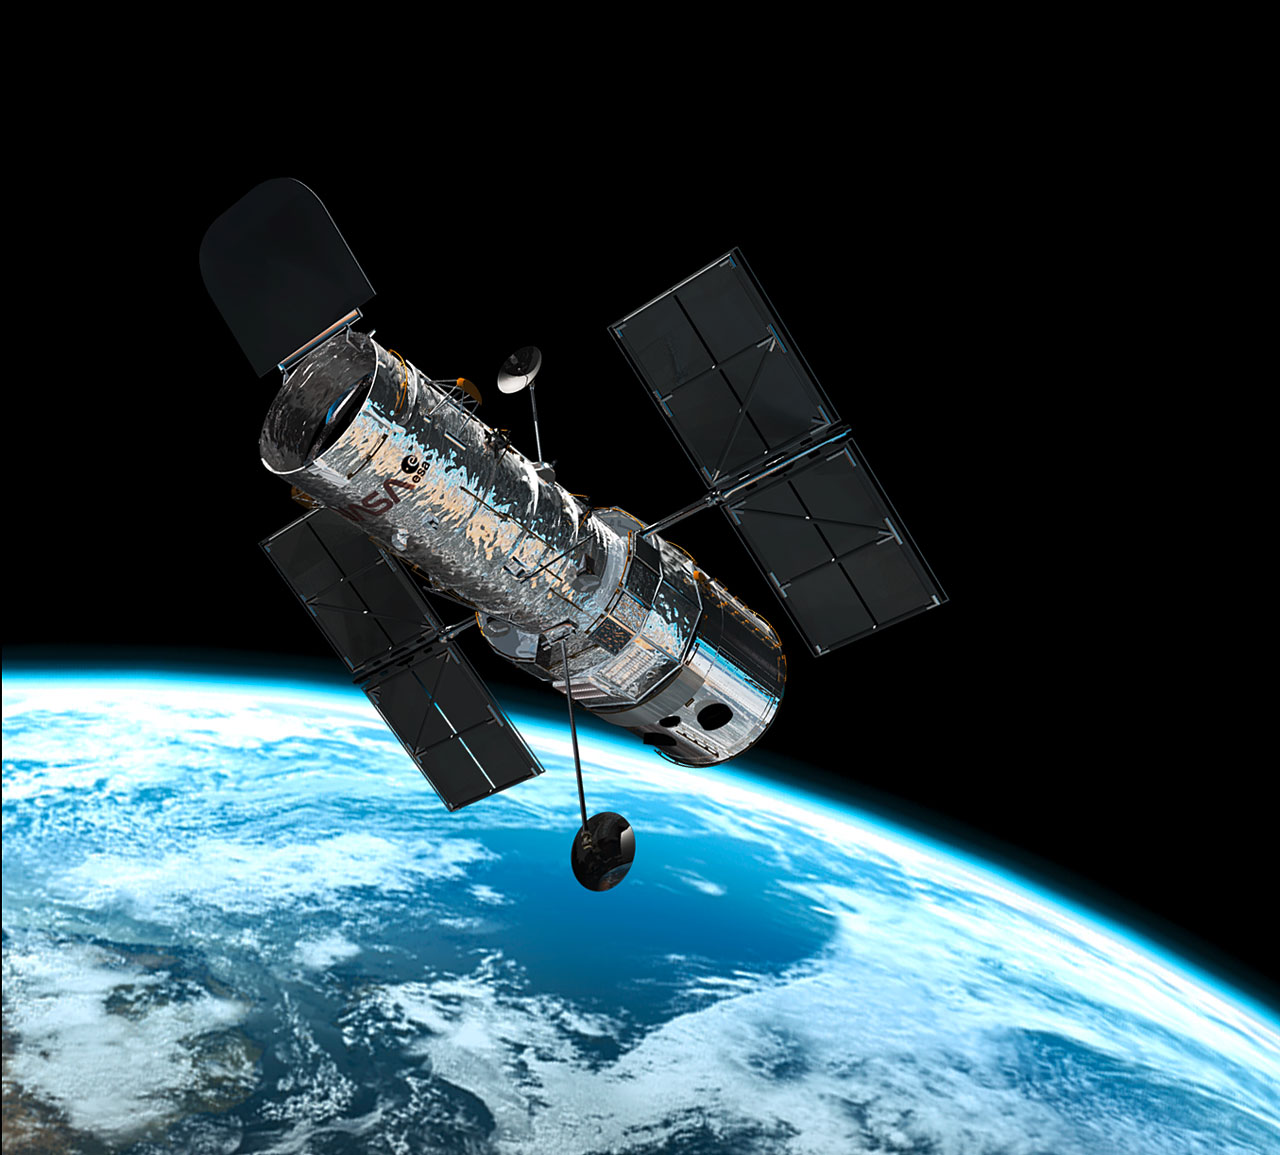 Hubble in orbit on www.spacetelescope.org